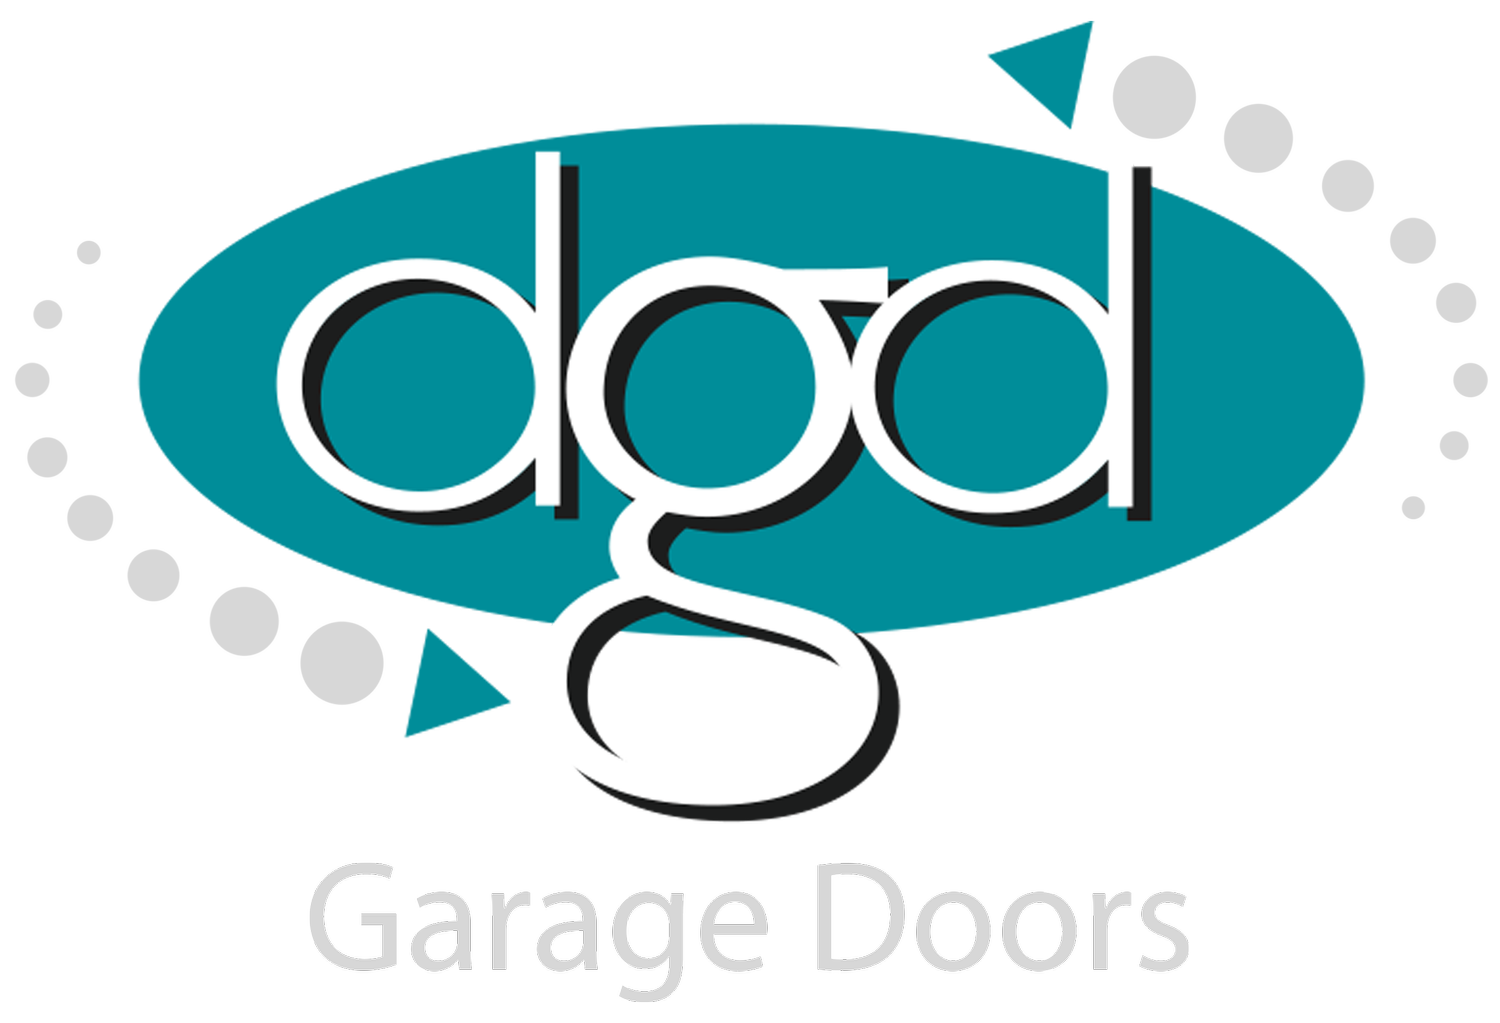 DGD Garage Doors